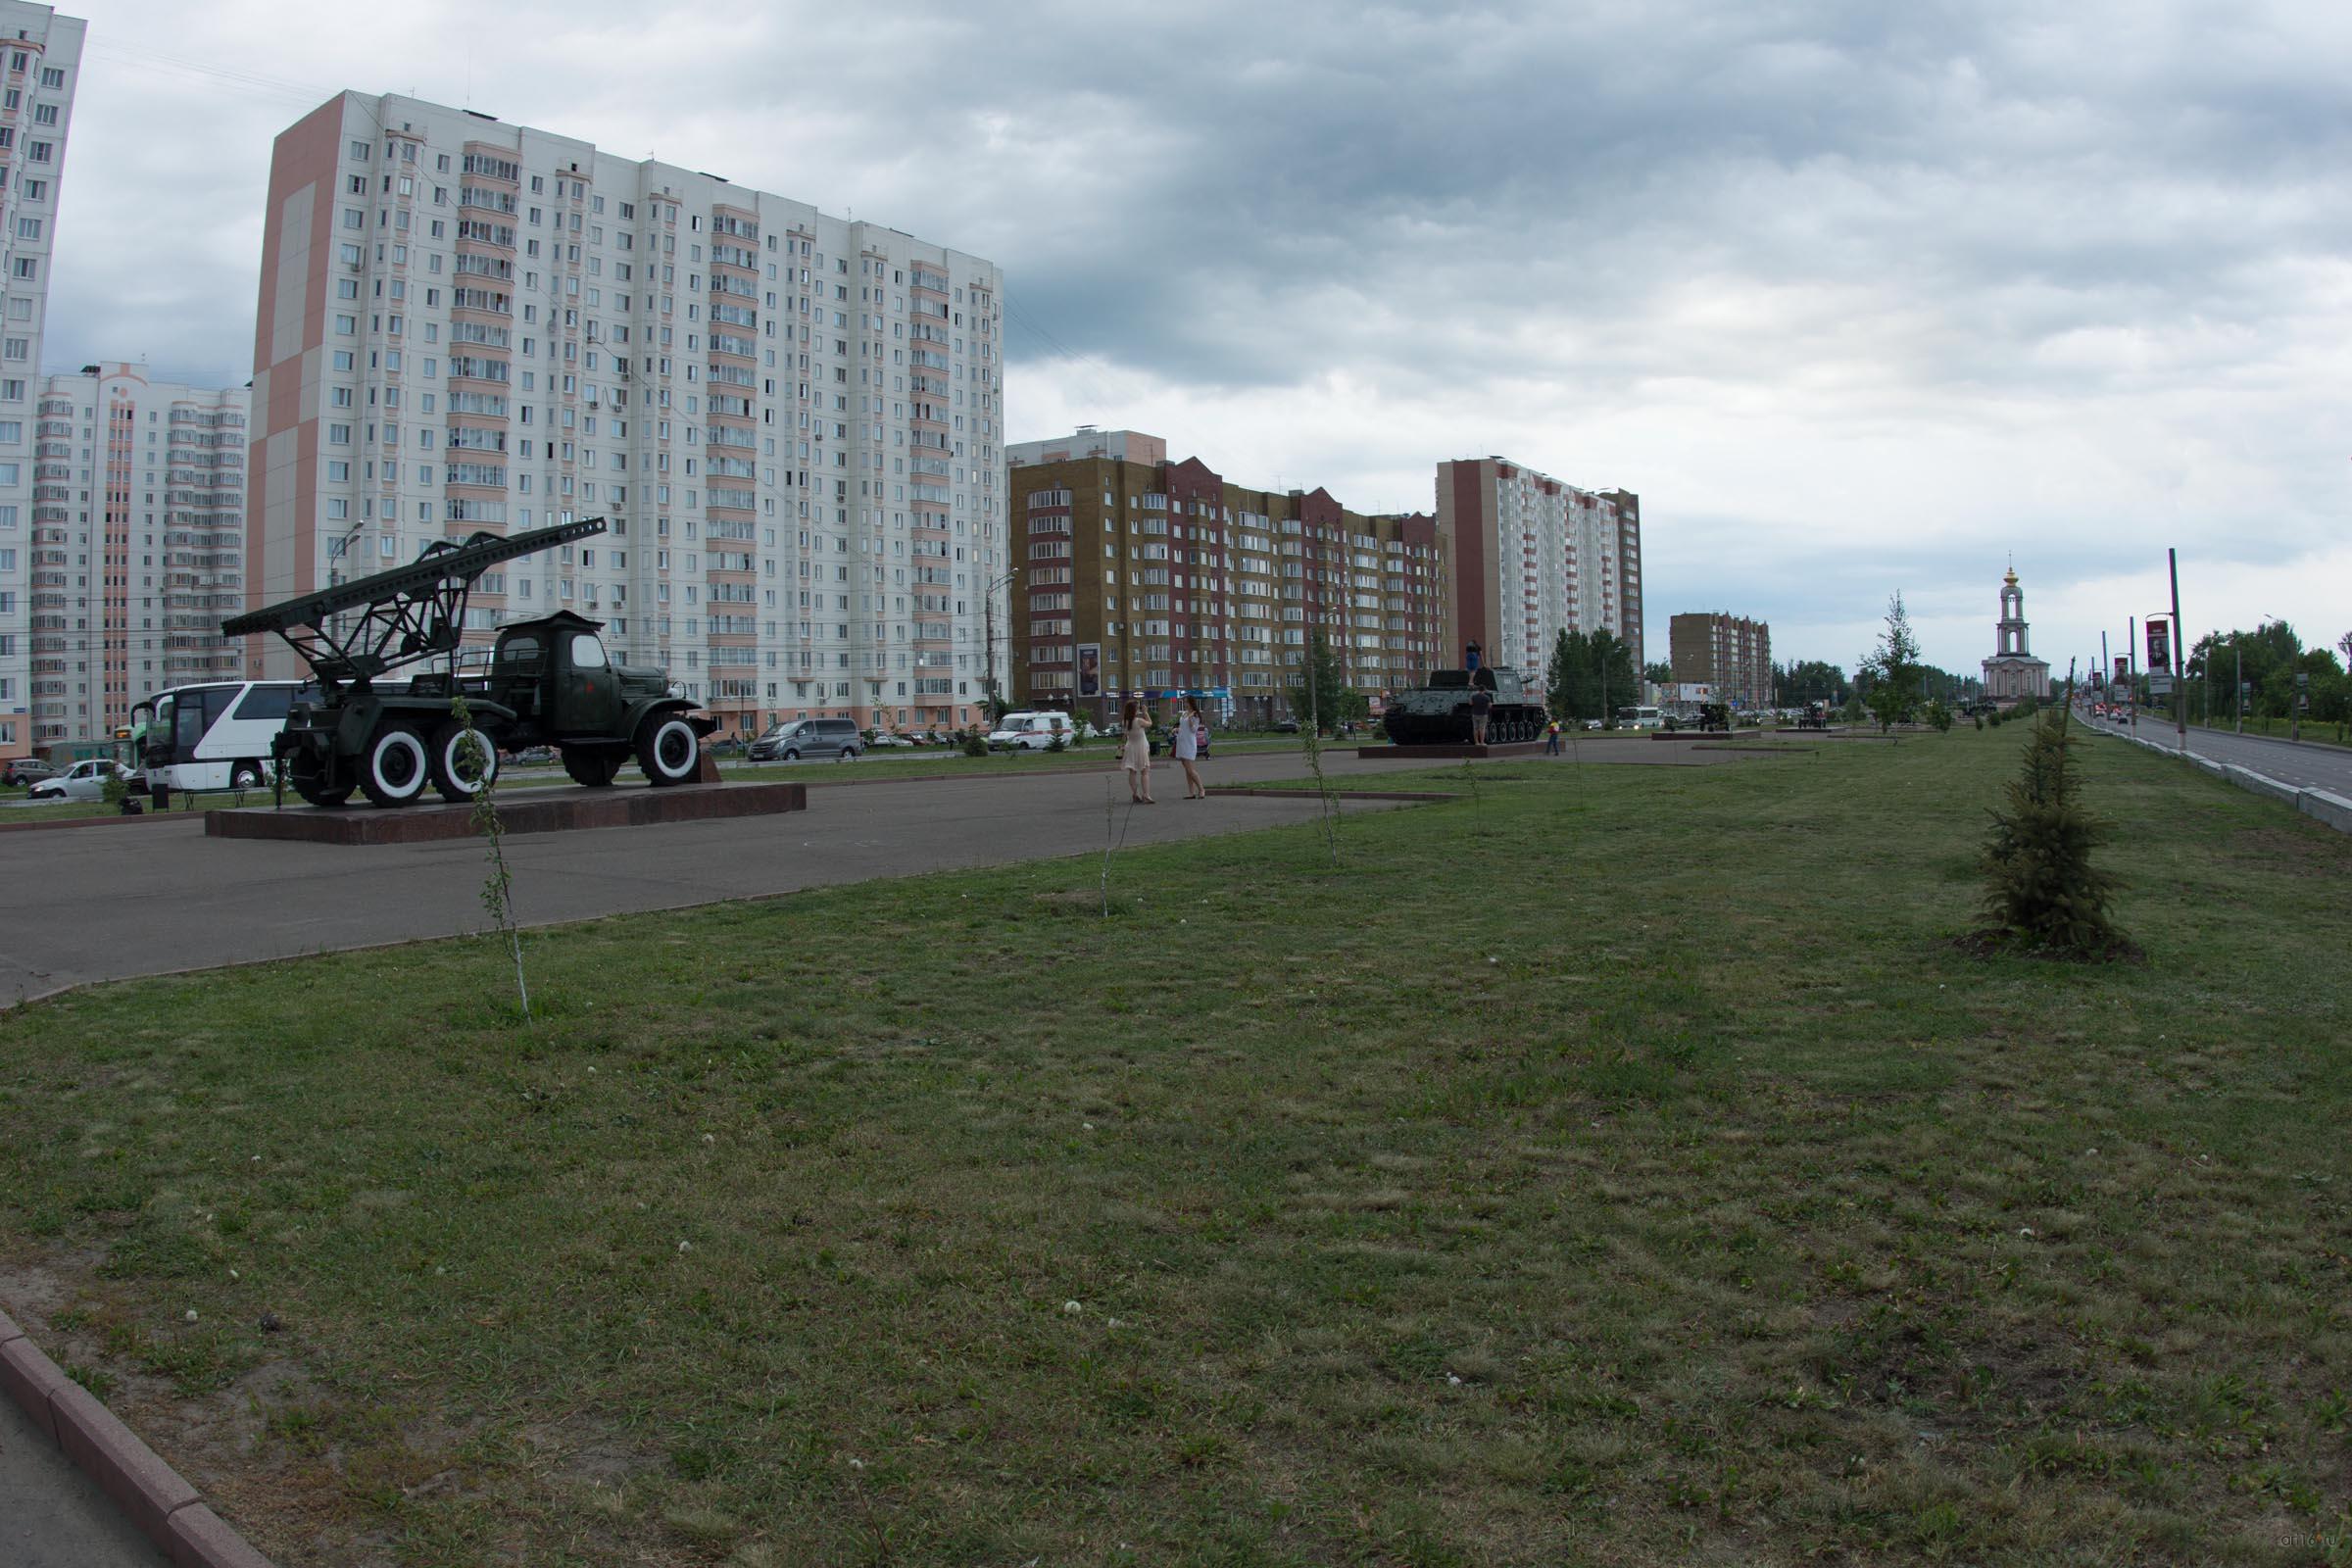 Аллея военной техники времен Великой Отечественной войны, г. Курск, июнь 2015::Курск, лето 2015